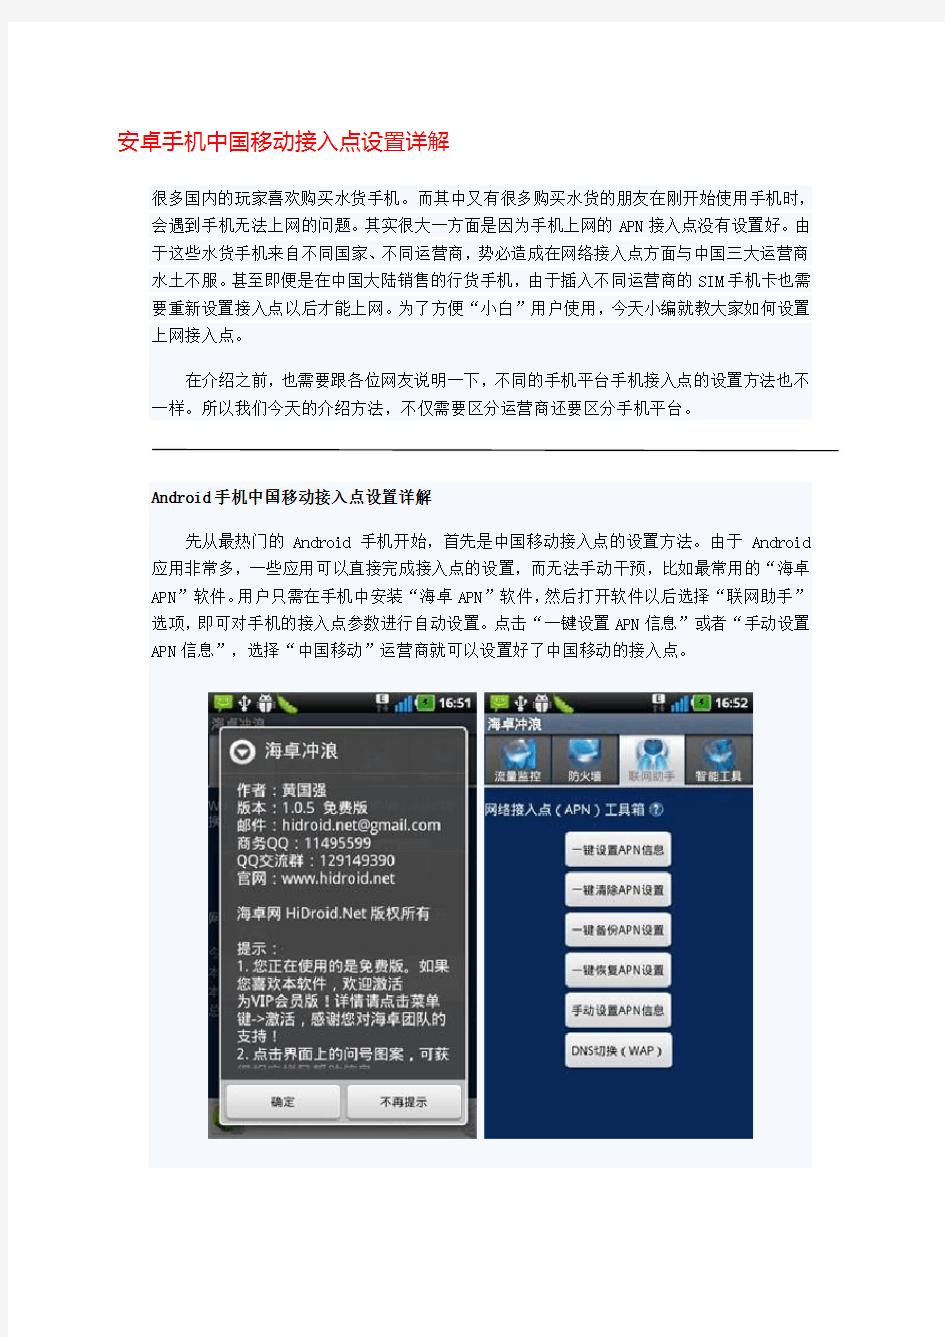 手机上网接入点设置大全 中国移动 中国联通 中国电信 iphone WP7 塞班